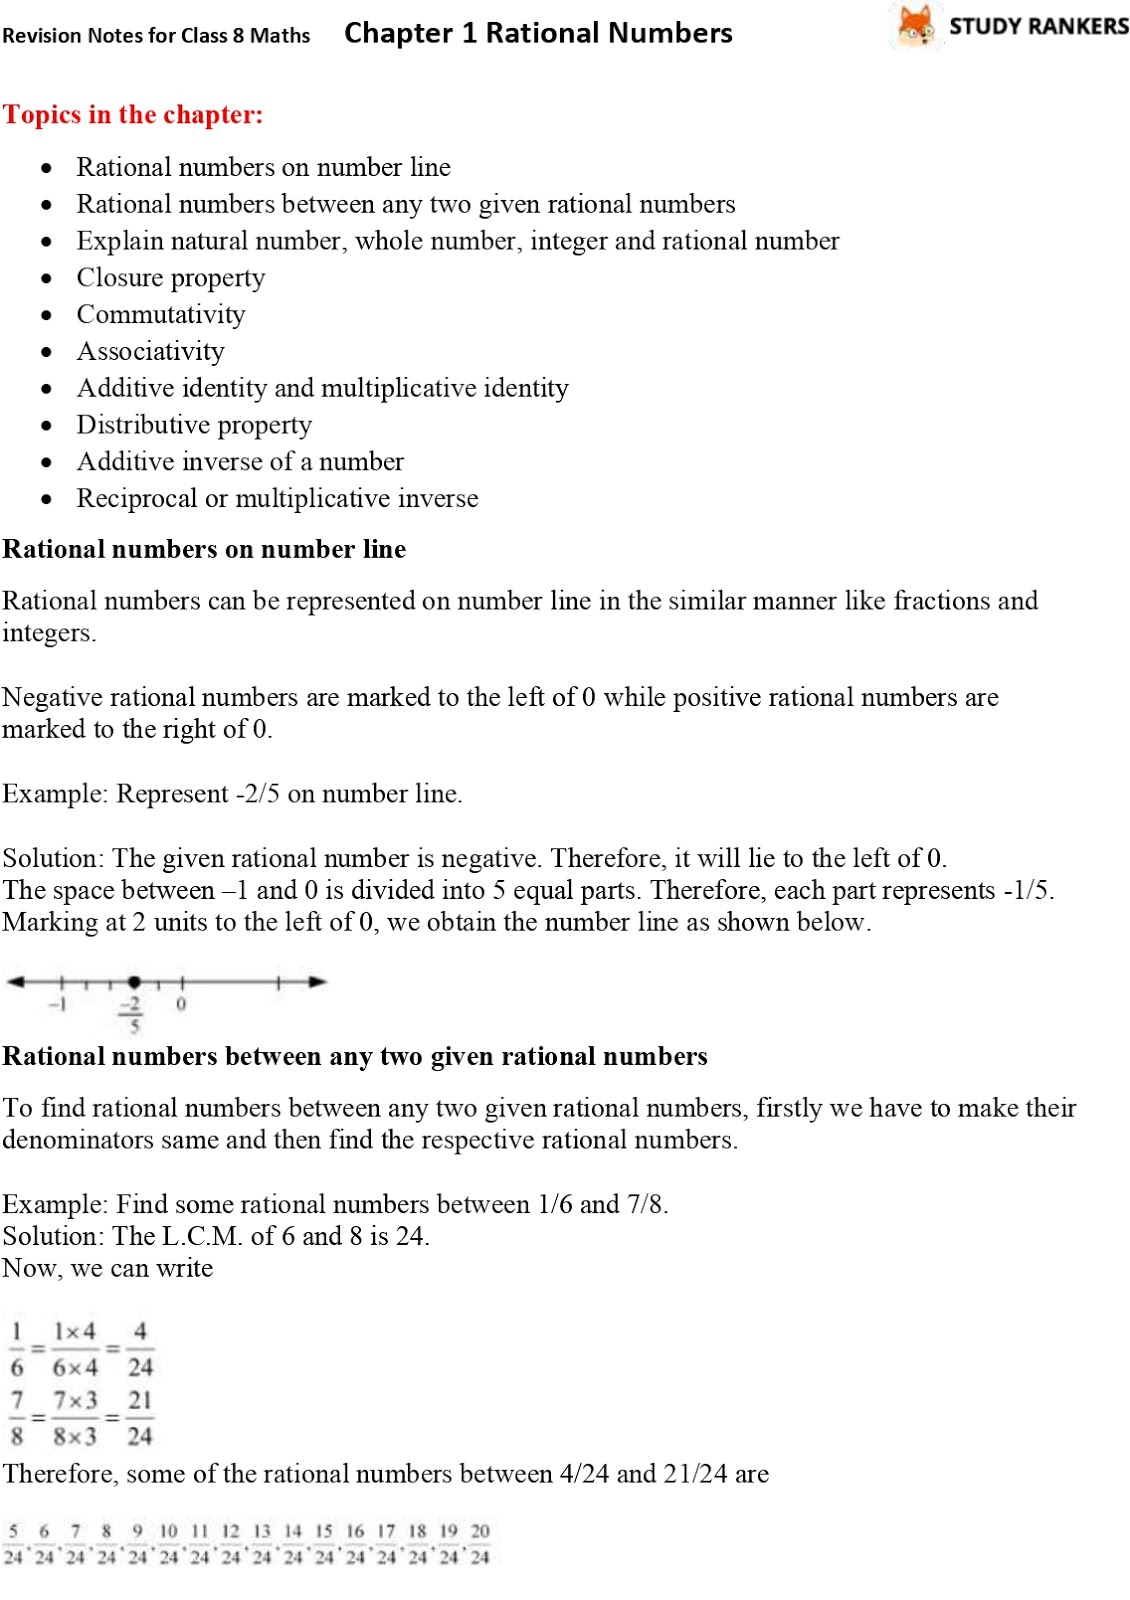 rational-numbers-free-worksheets-grade-8-2022-numbersworksheets